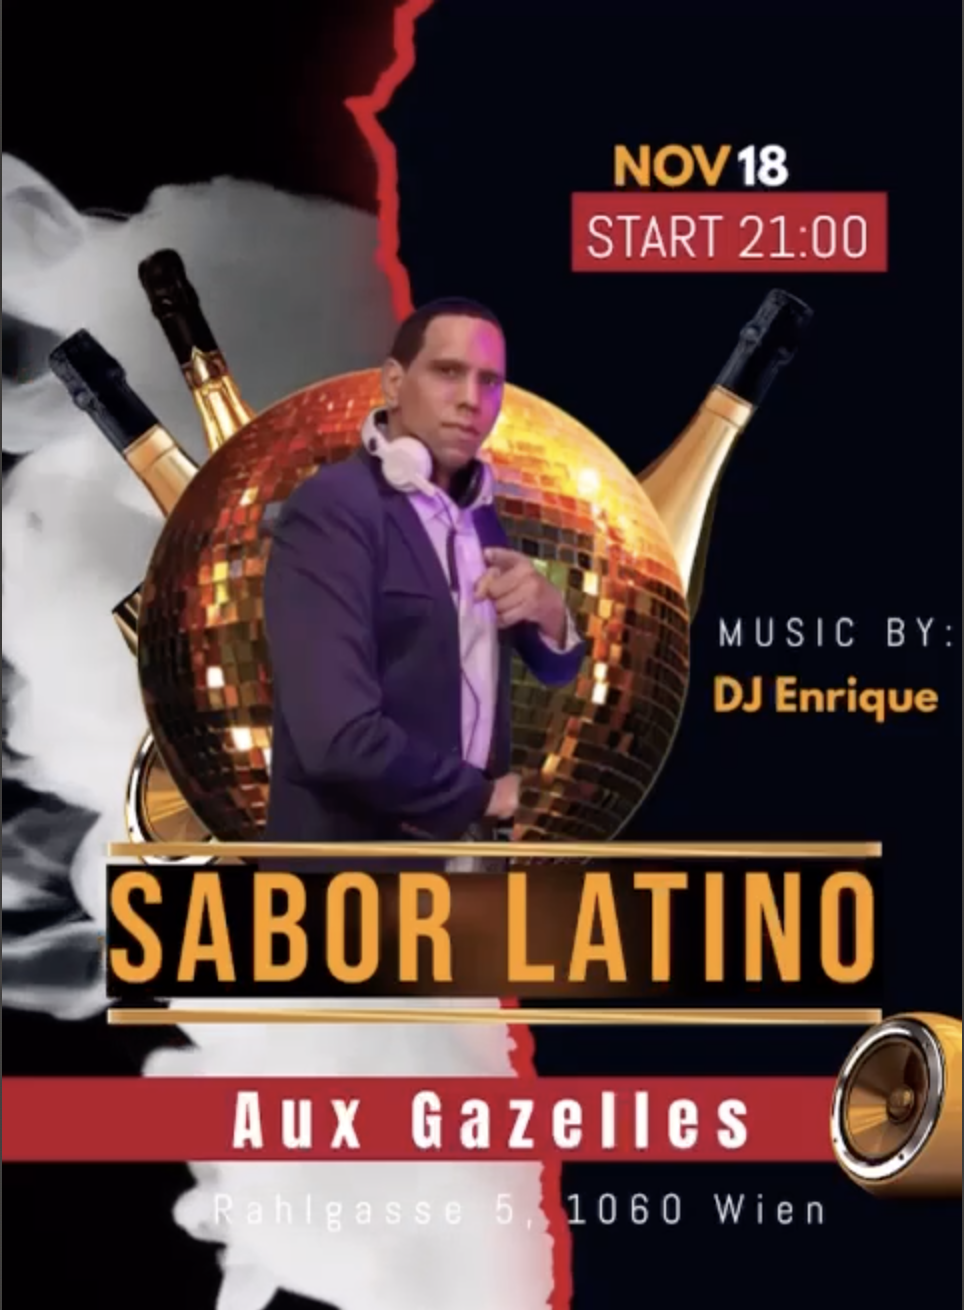 Sabor Latino at Aux Gazells